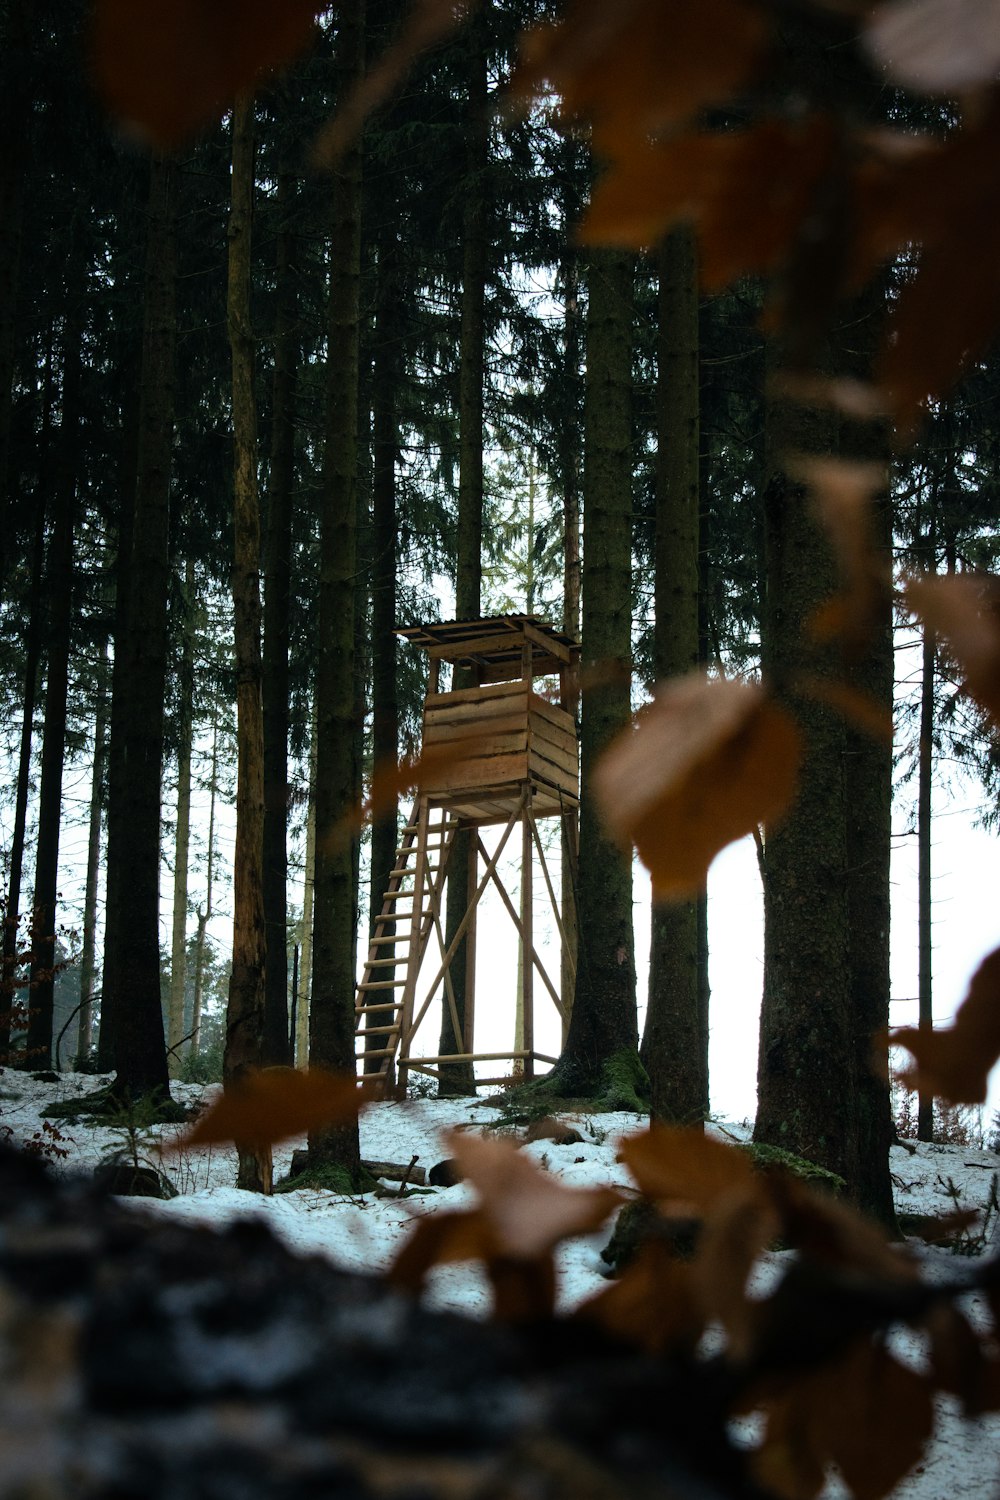 casa de madeira marrom na floresta durante o dia